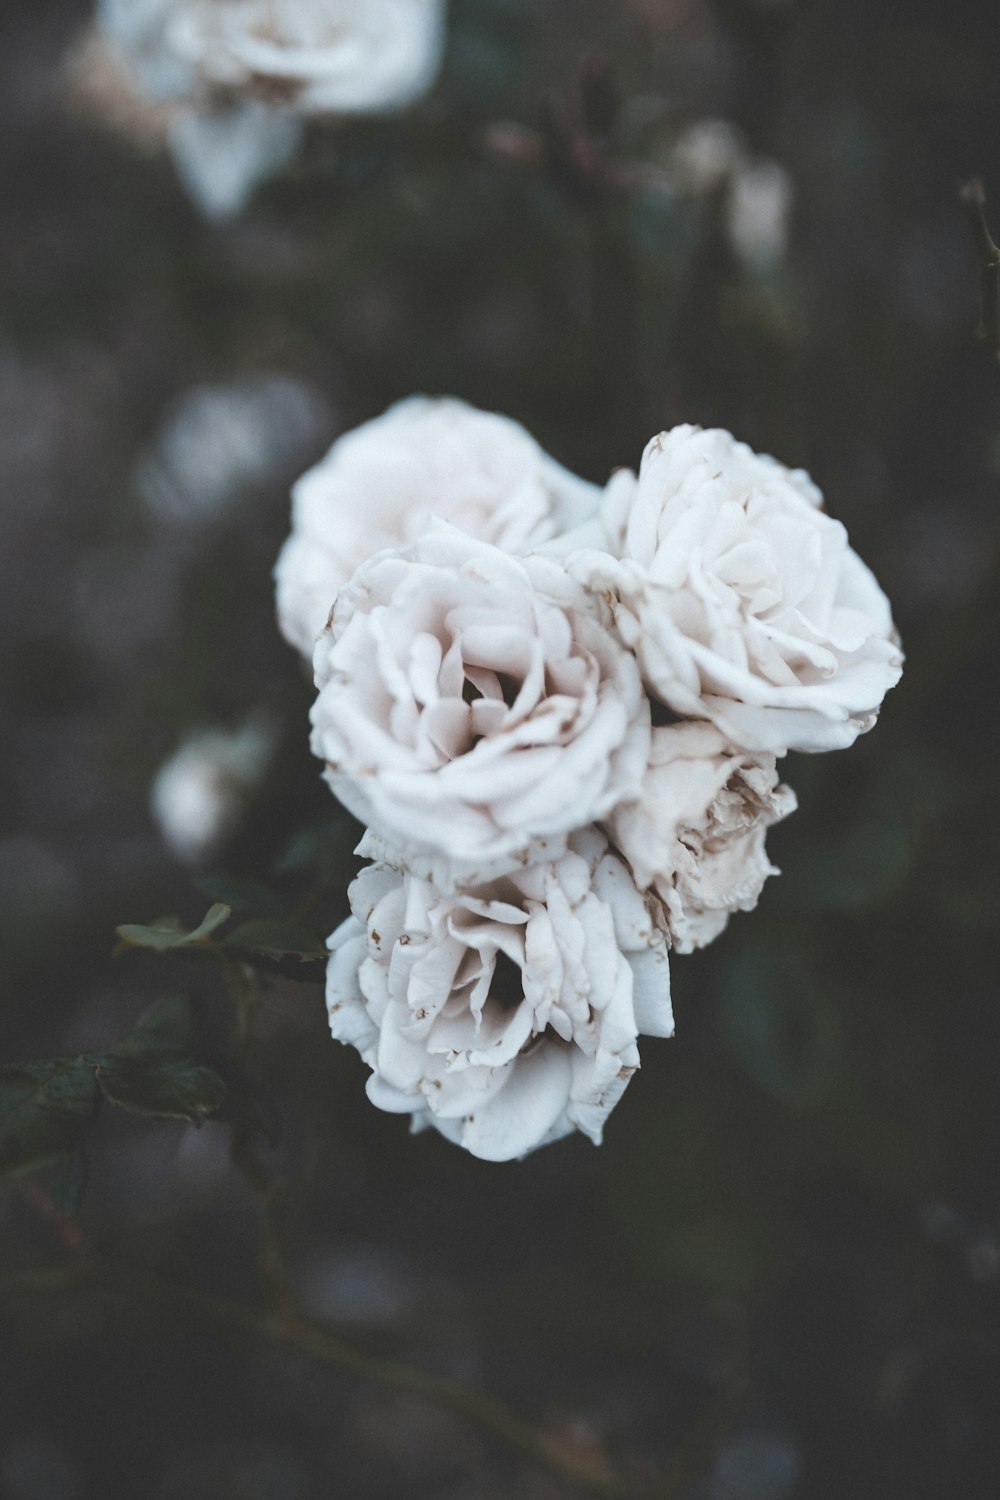 fotografia a fuoco superficiale di fiori bianchi